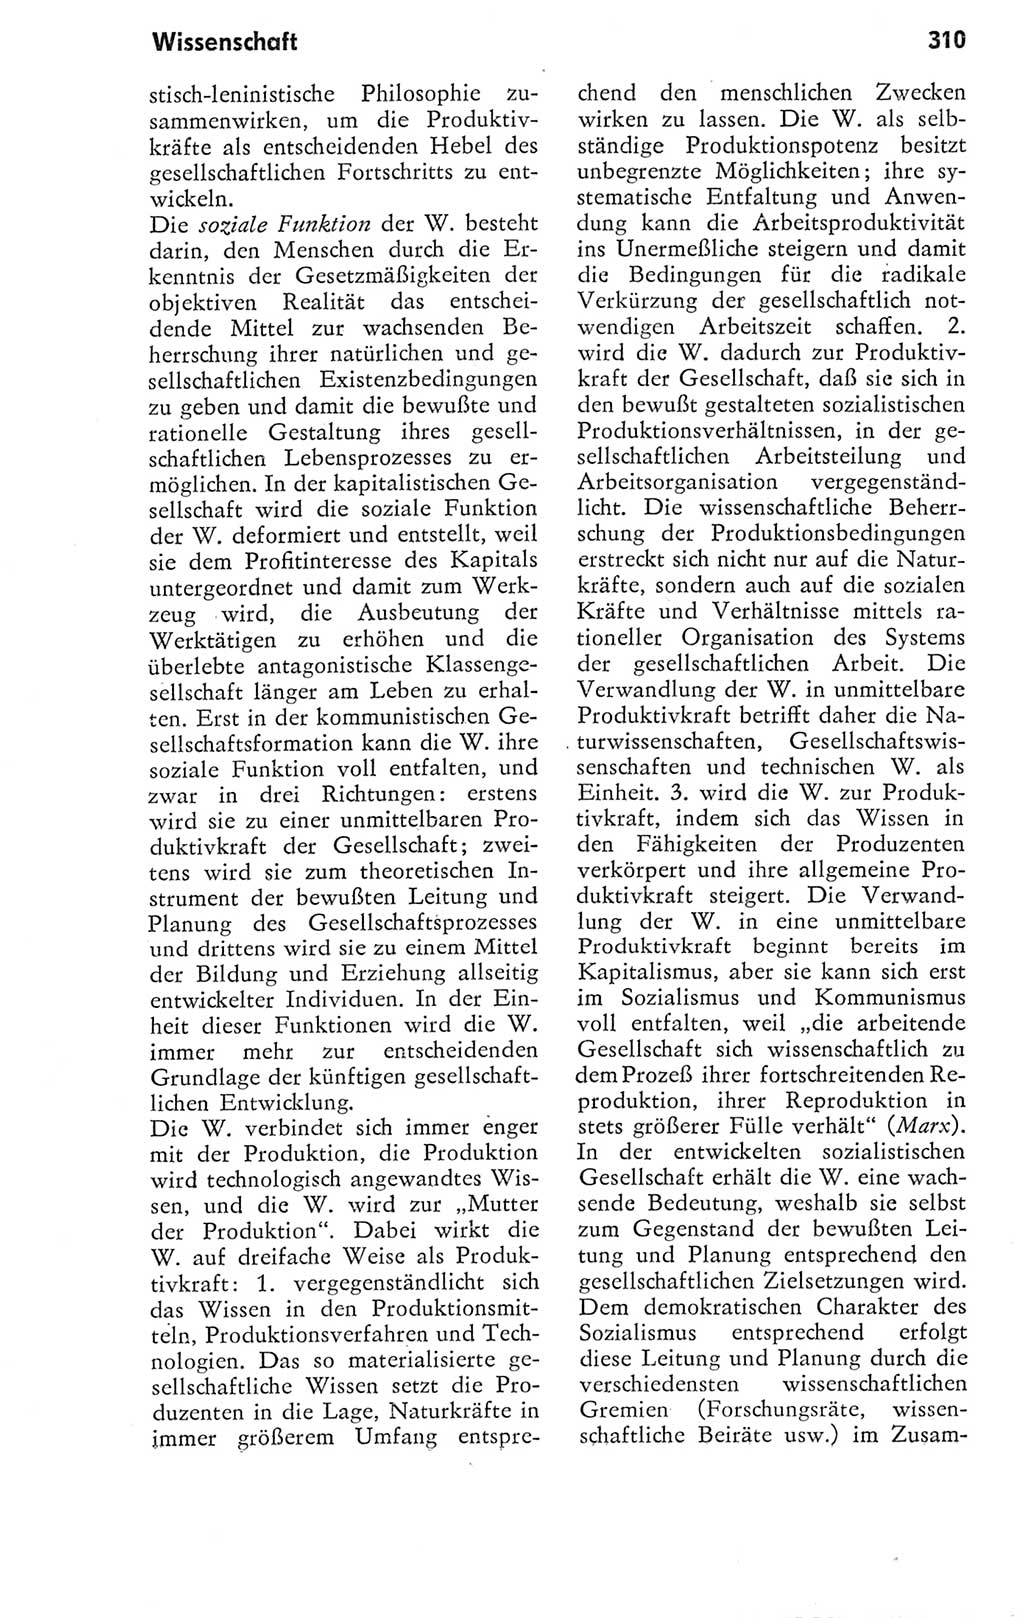 Kleines Wörterbuch der marxistisch-leninistischen Philosophie [Deutsche Demokratische Republik (DDR)] 1974, Seite 310 (Kl. Wb. ML Phil. DDR 1974, S. 310)